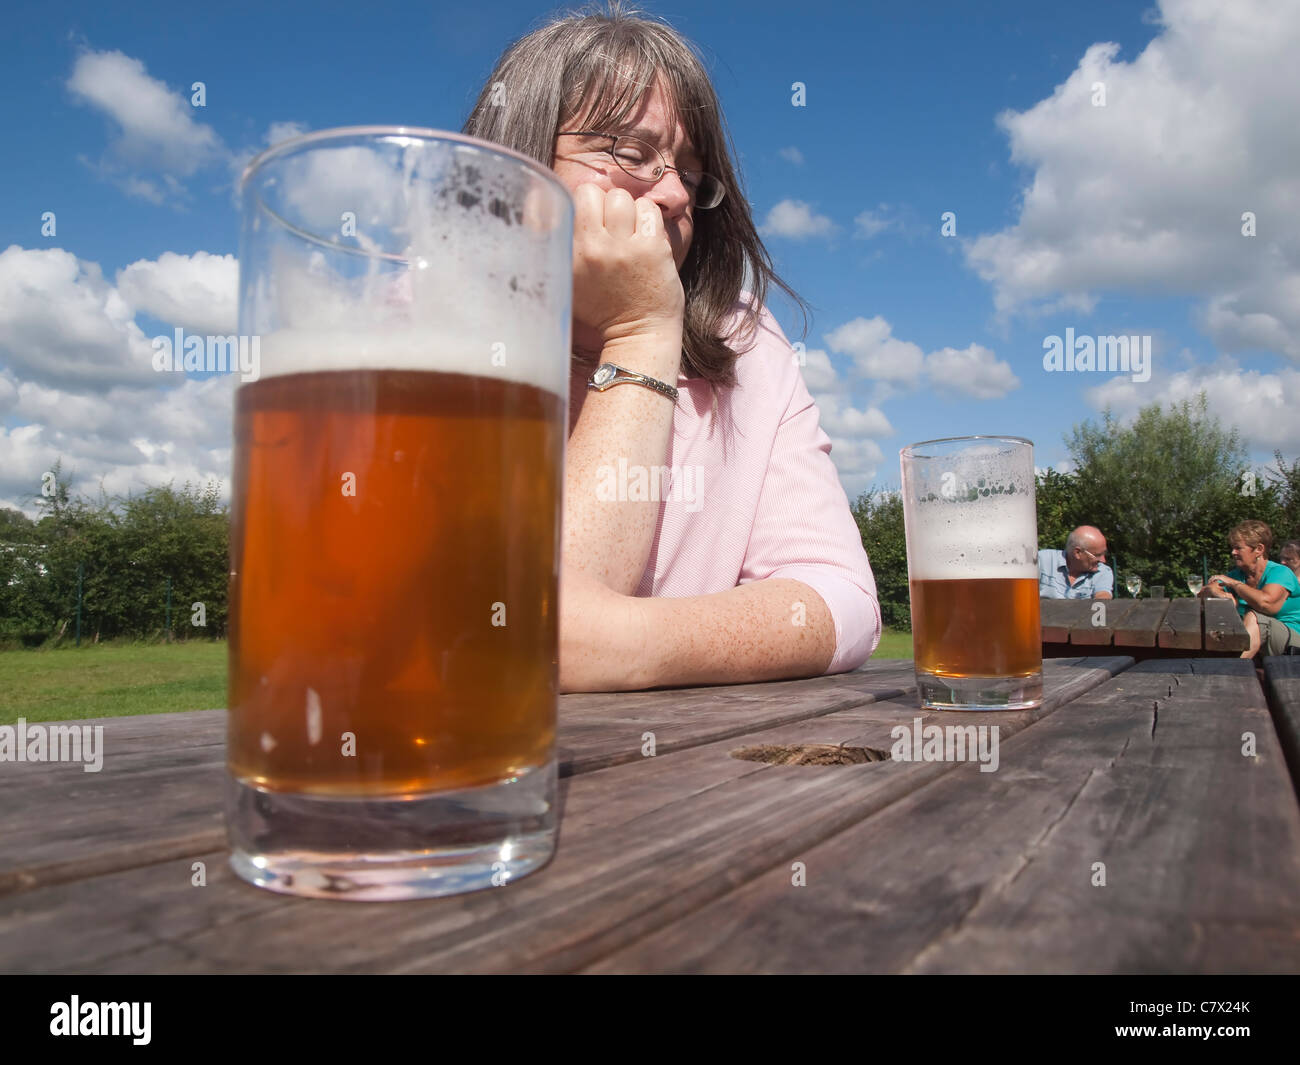 Nachdenkliche Frau in einem Biergarten an einem sonnigen Tag mit halb volle Gläser Bier auf dem einfachen Holztisch Stockfoto